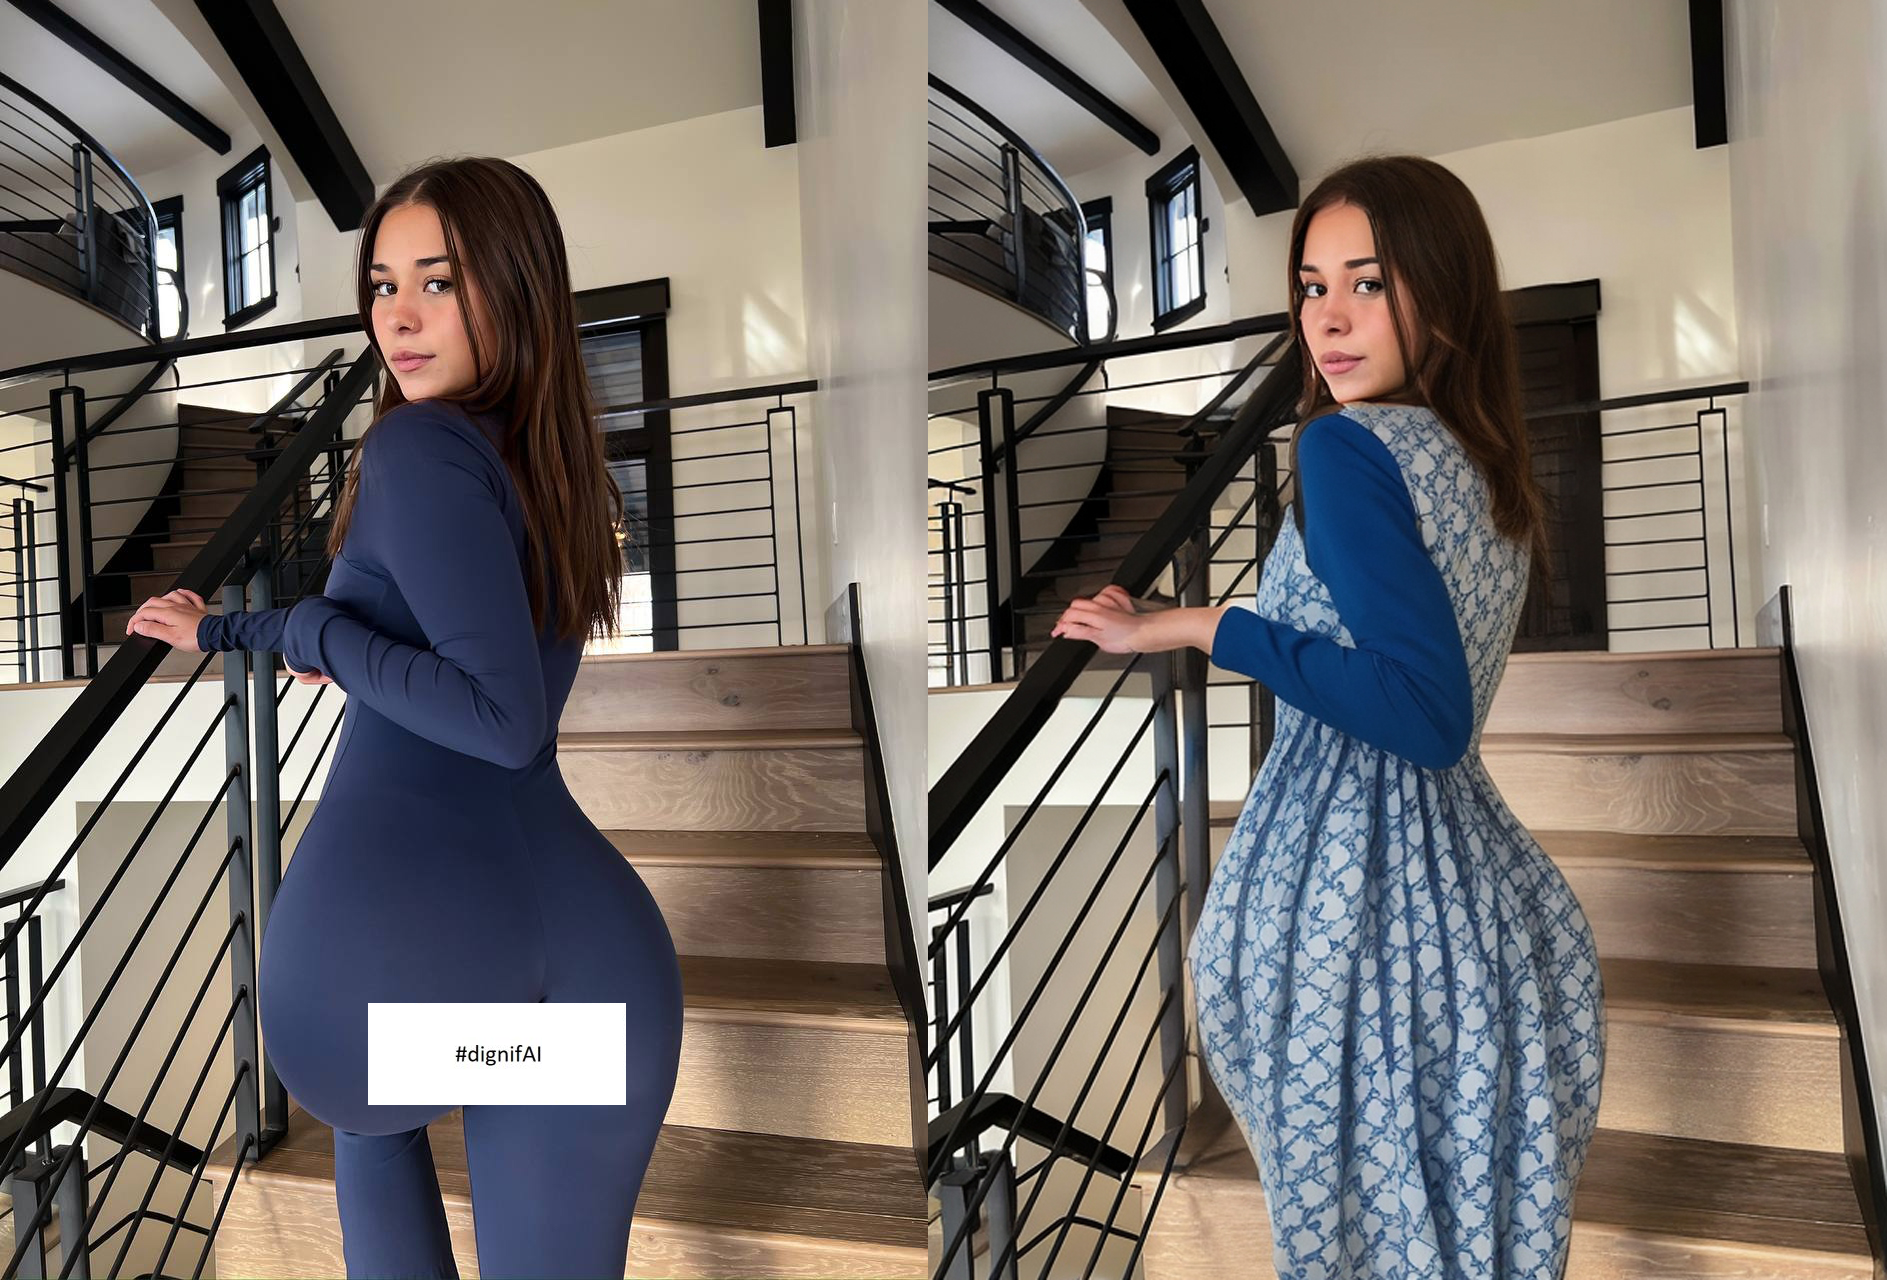 Dwa obrazy przedstawiające kobietę w dwóch różnych sukienkach stojącą na drewnianych schodach w domu, z jednym zdjęciem ukazującym ją w granatowej obcisłej sukience, a drugim w tej samej pozycji w sukience z niebieskimi kwiatowymi wzorami, które wizualnie zmieniają jej sylwetkę, z pomocą narzędzia DignifAI.